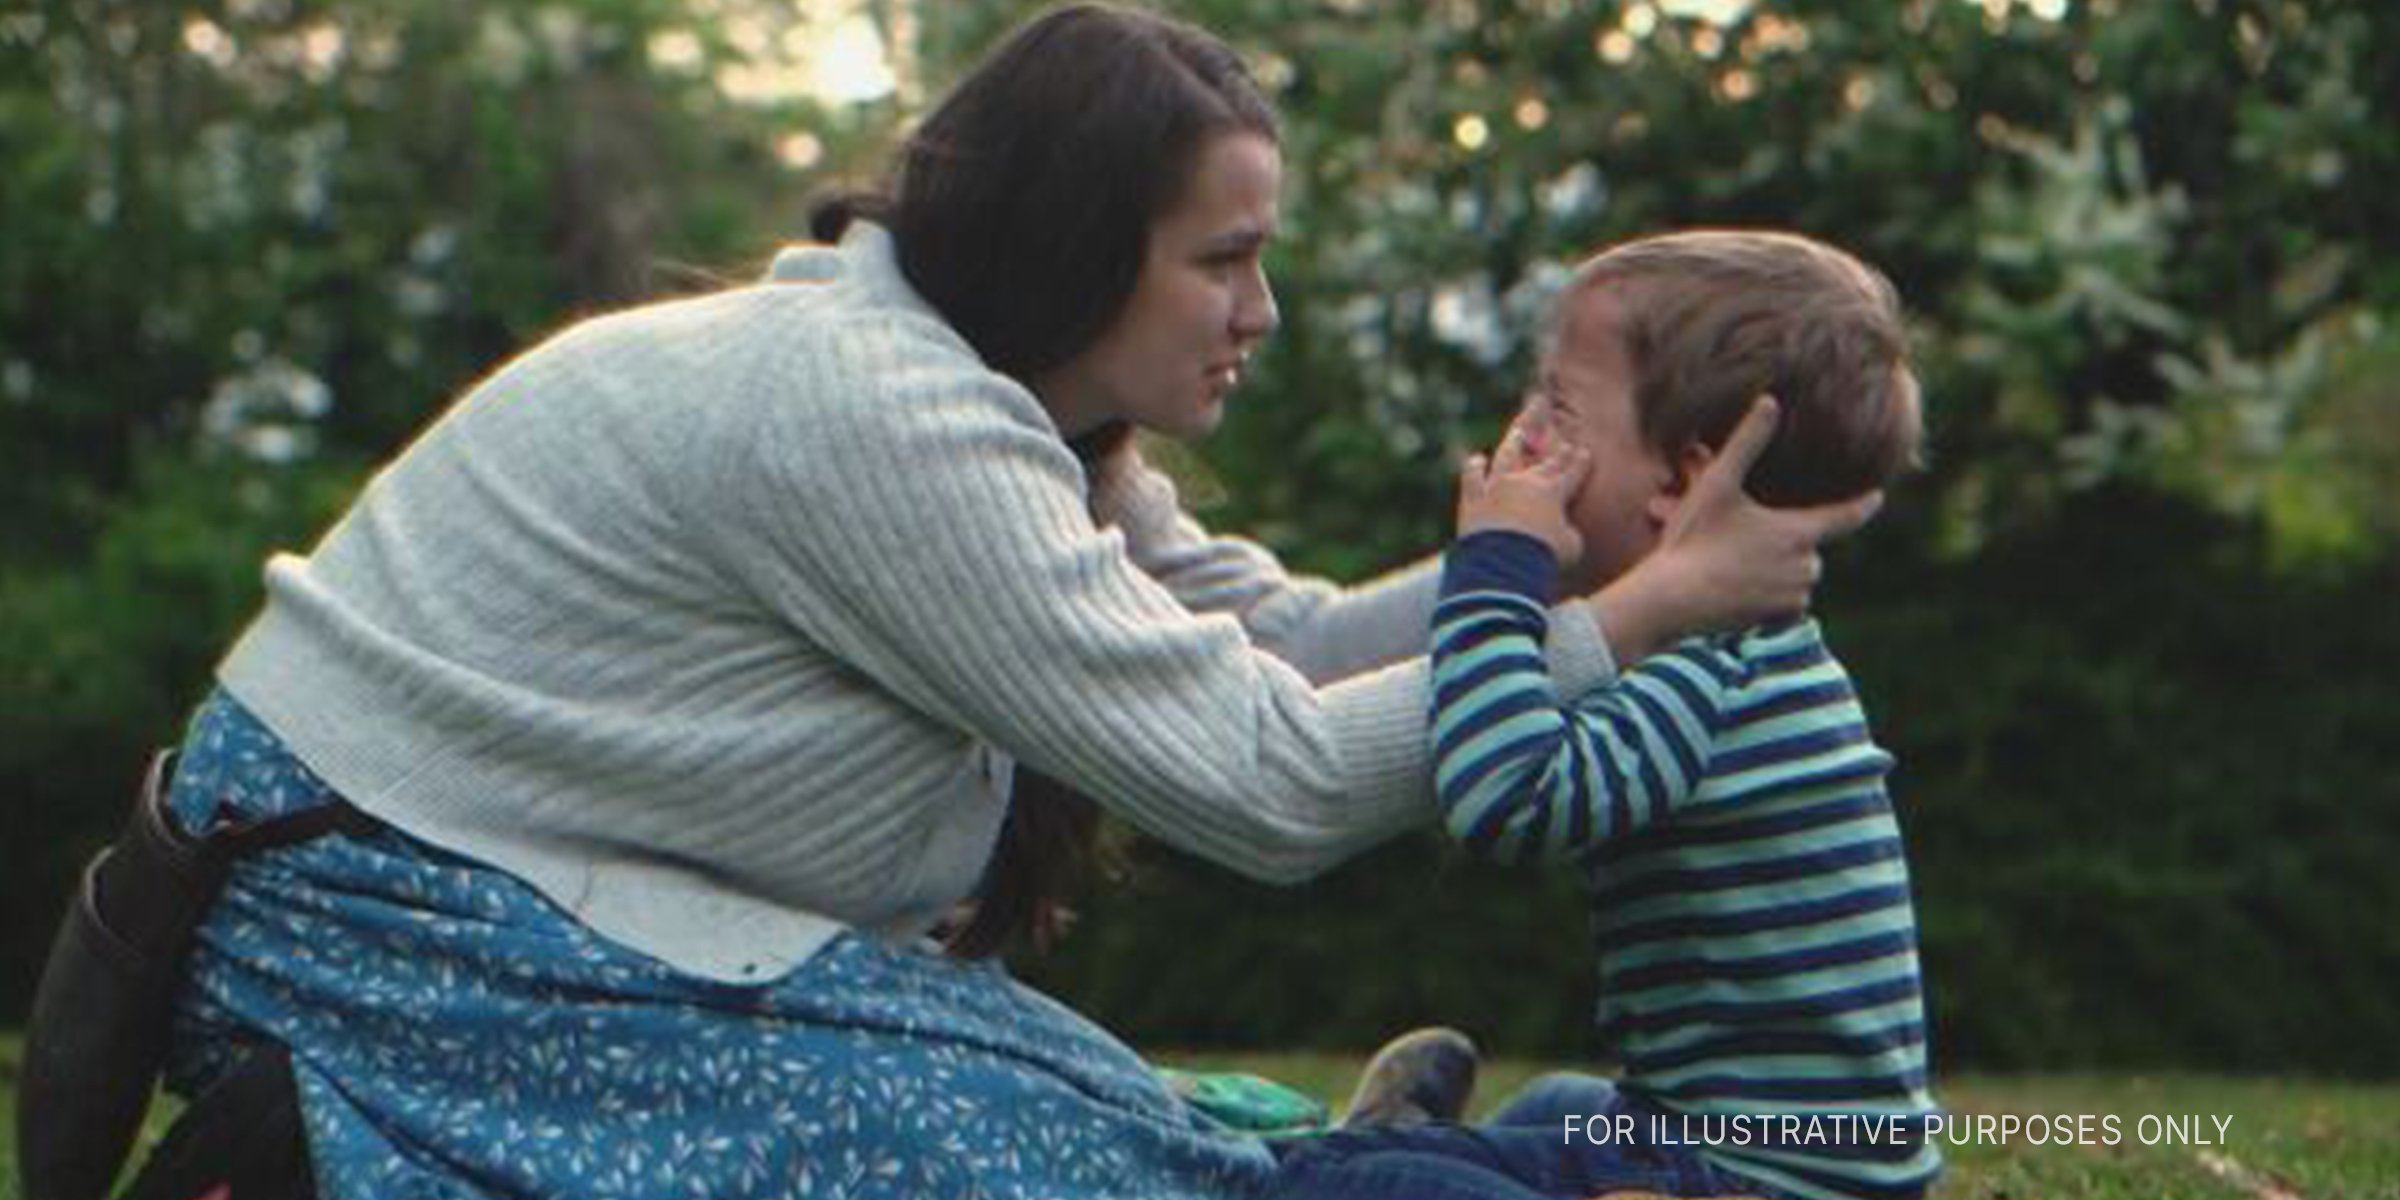 Frau tröstet kleinen Jungen. | Quelle: Shutterstock